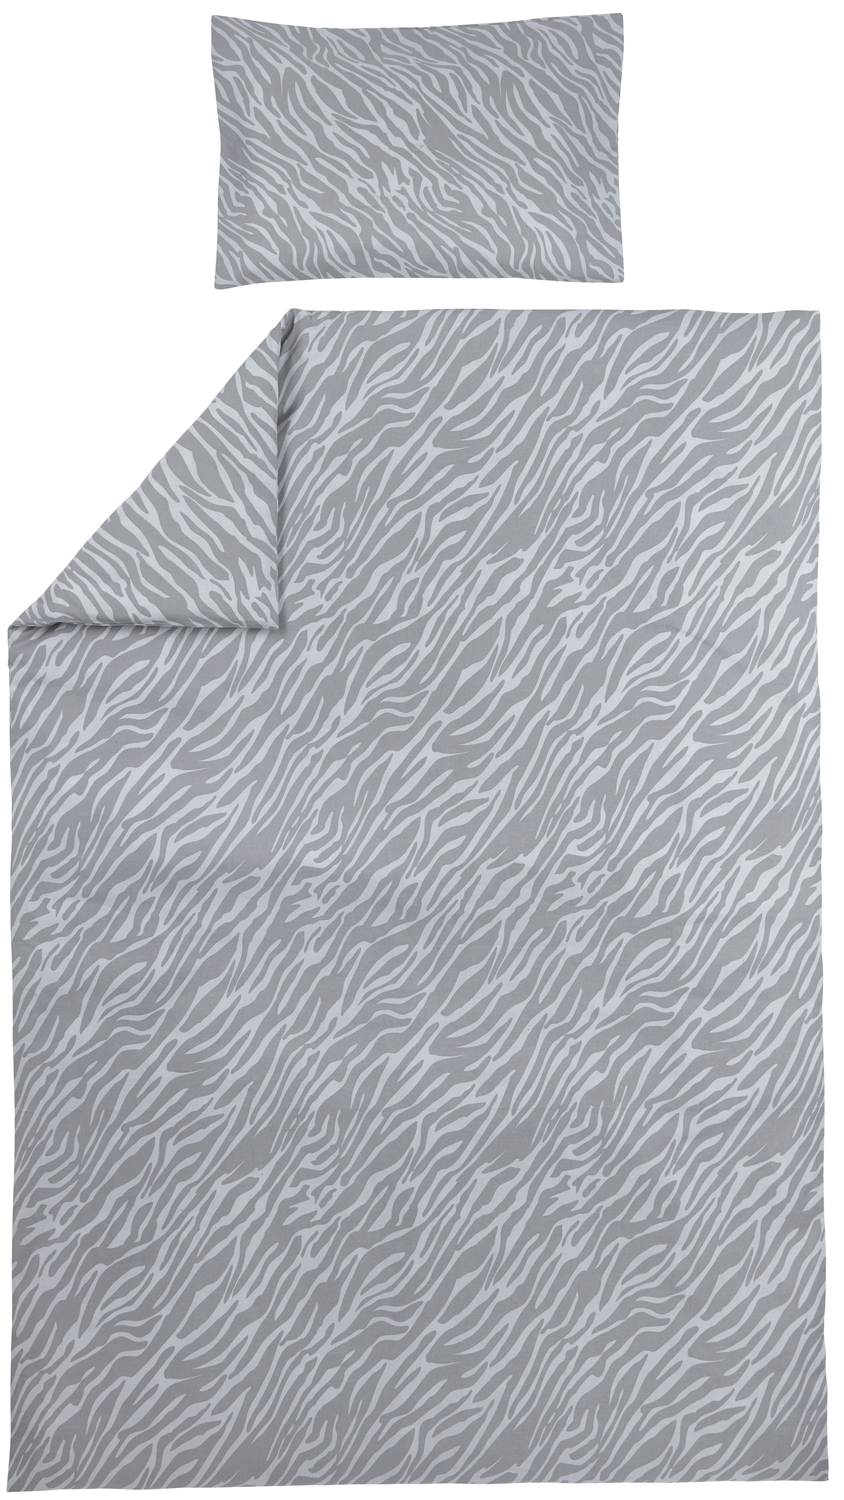 Bettwäsche 1-Pers. Zebra - grey - 140x200/220cm